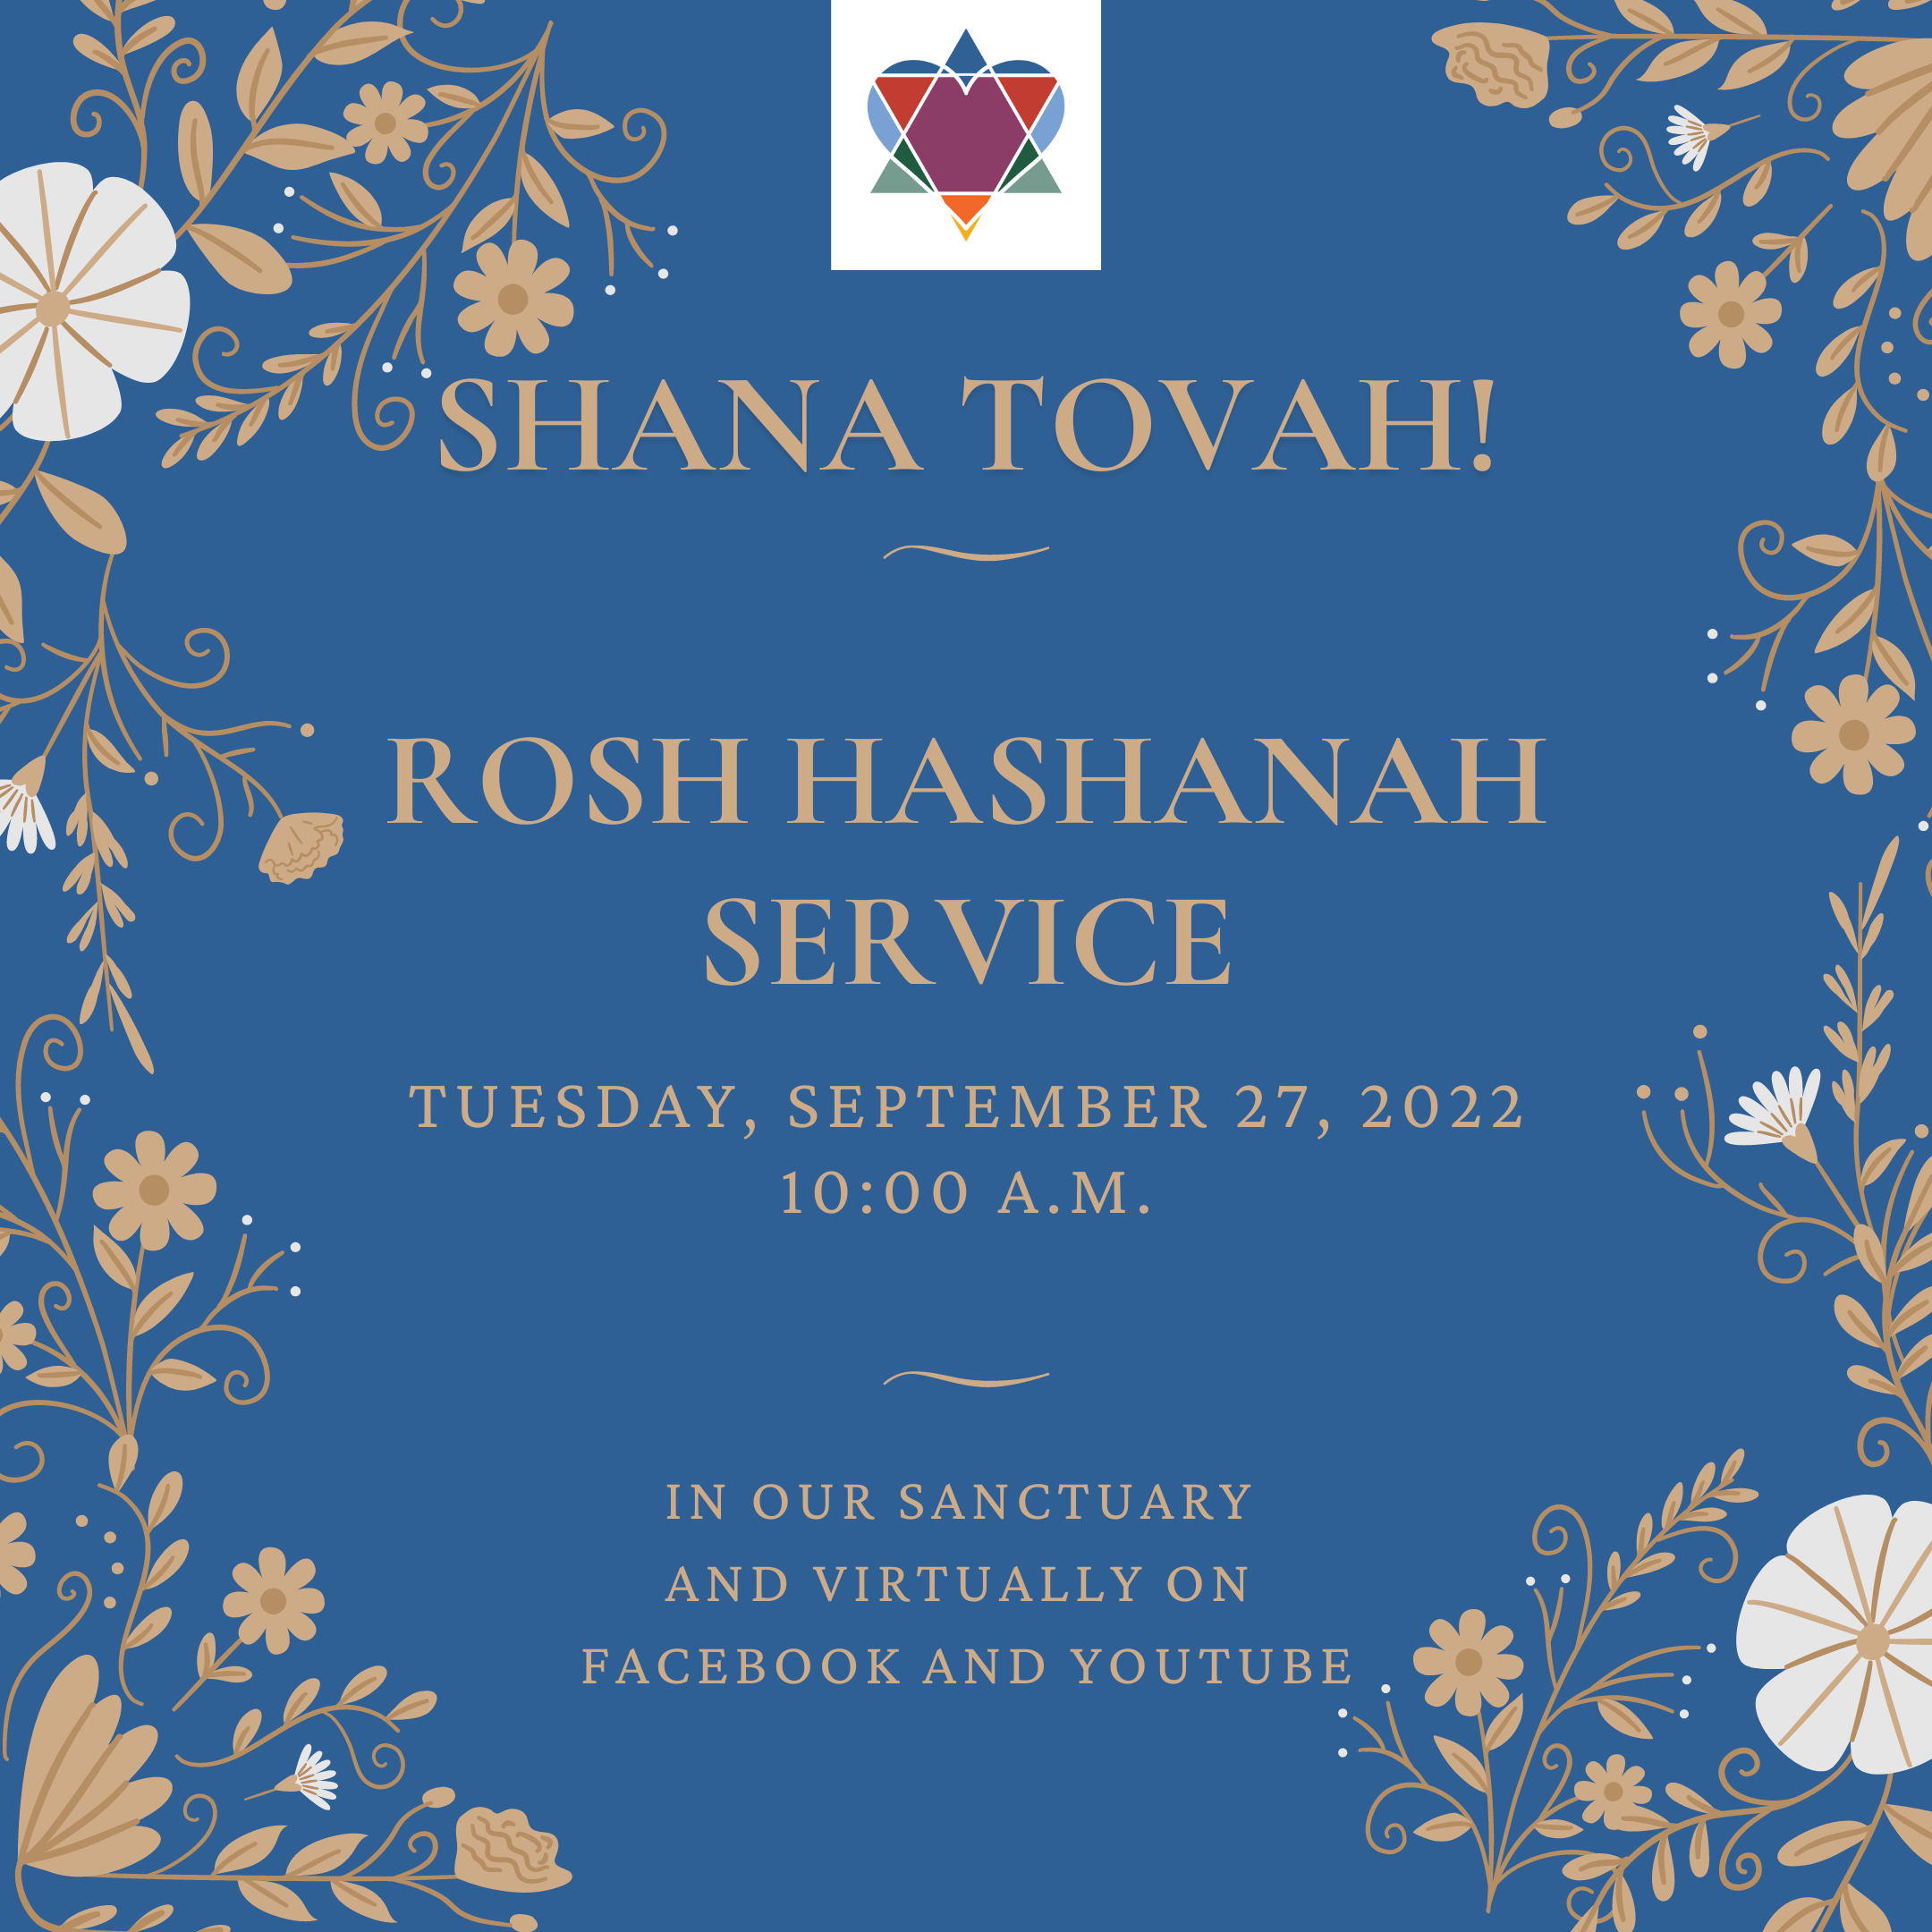 ROSH HASHANAH SERVICE